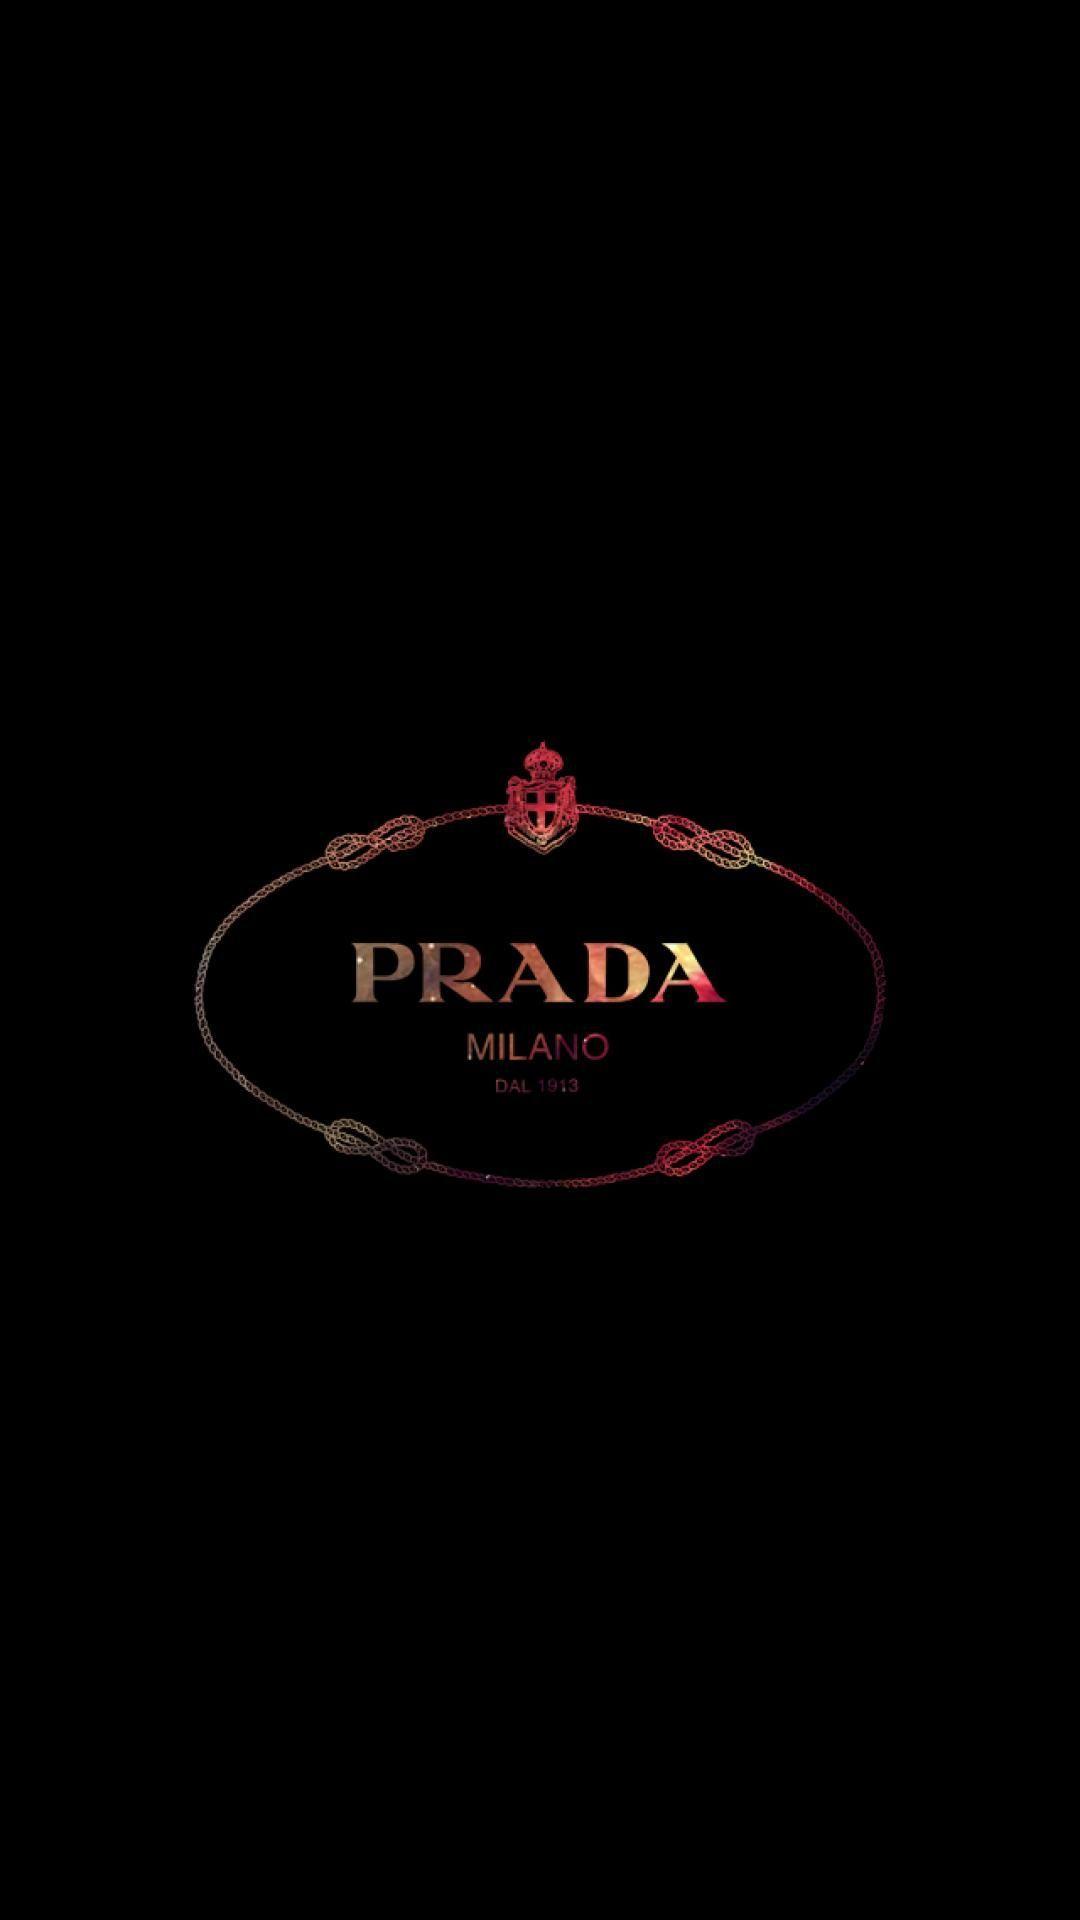 Prada Wallpapers - Top Free Prada Backgrounds - WallpaperAccess